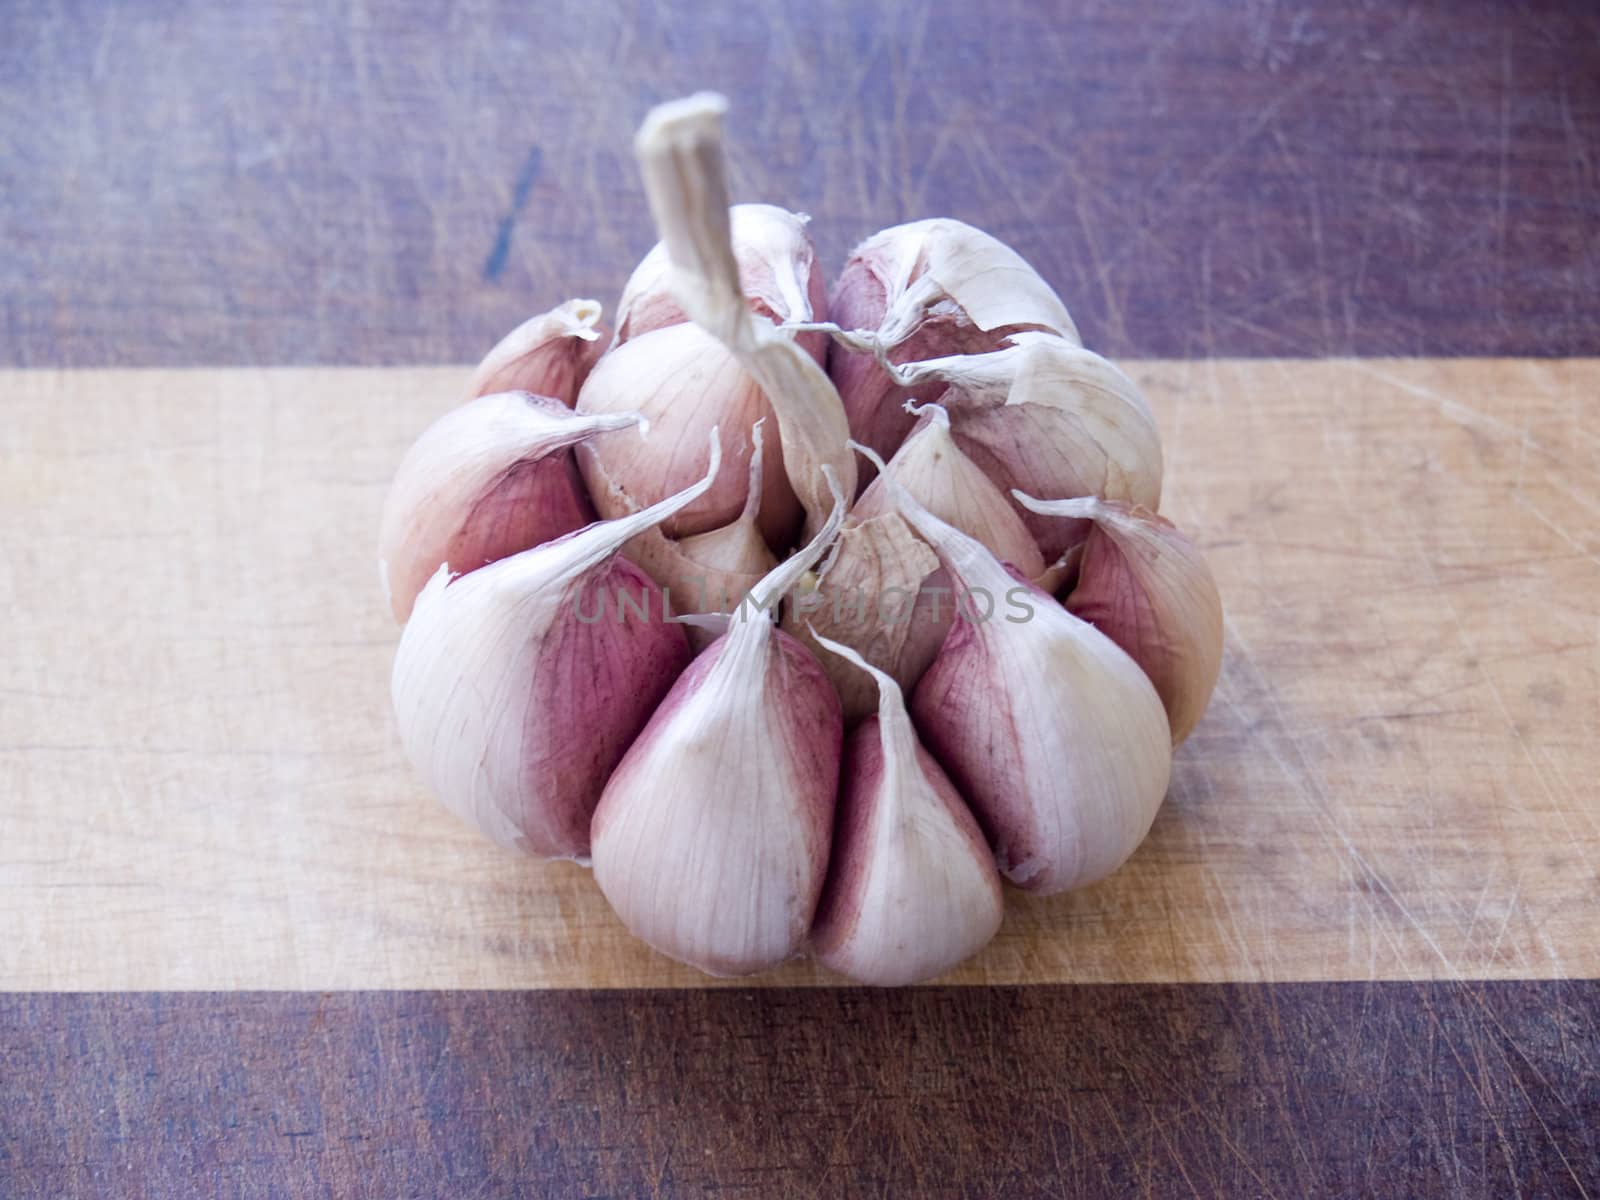 Garlic by lauria